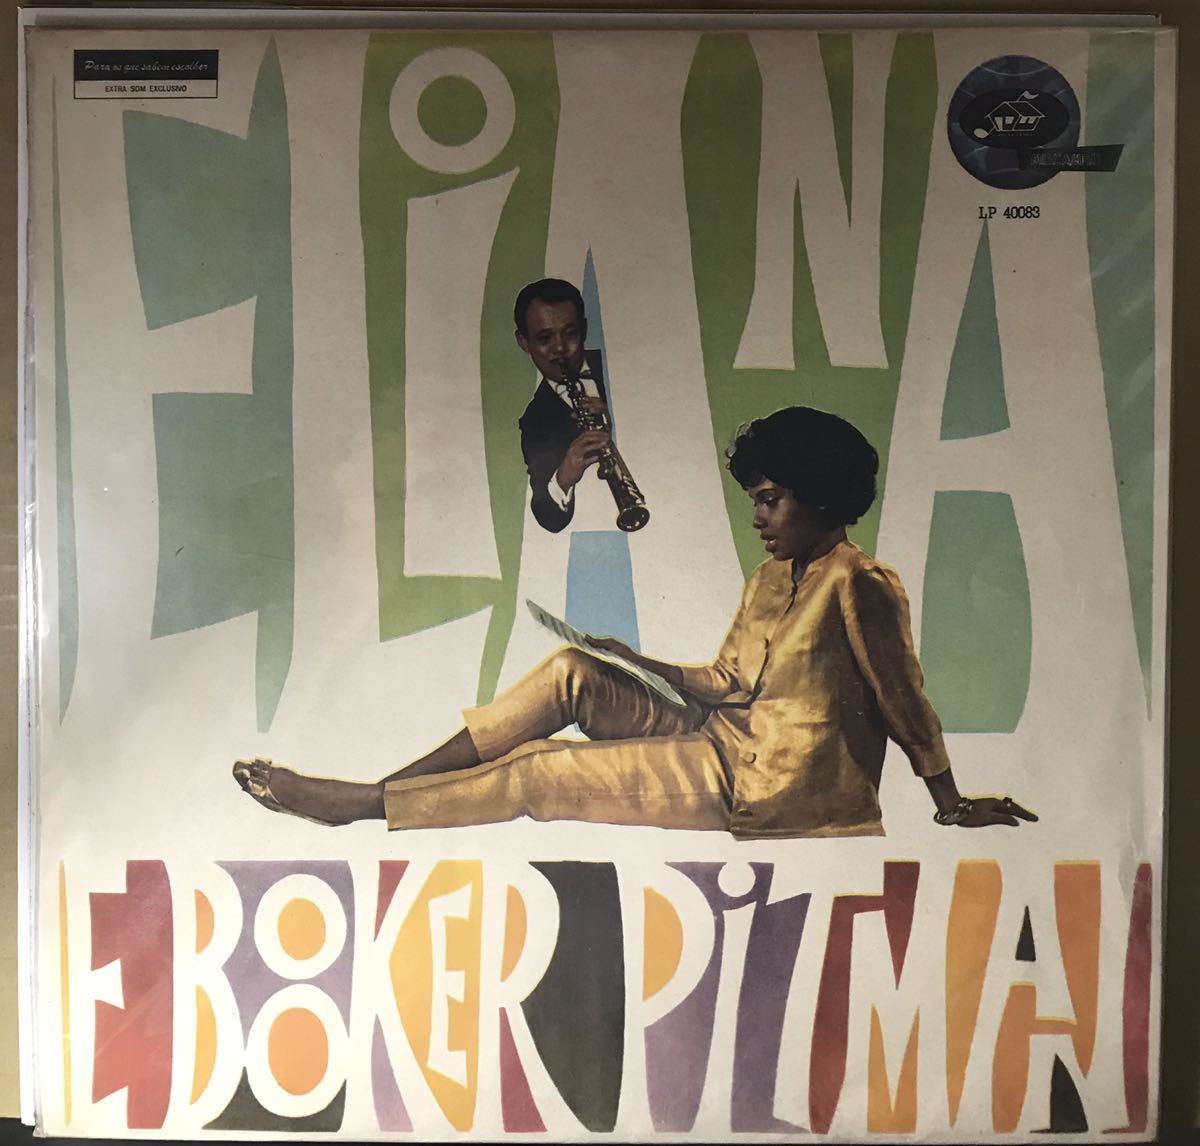 ネット販促品 美品 ELIANA PITMAN E BOOKER PITMAN / MOCAMBO LP 40083 レコード